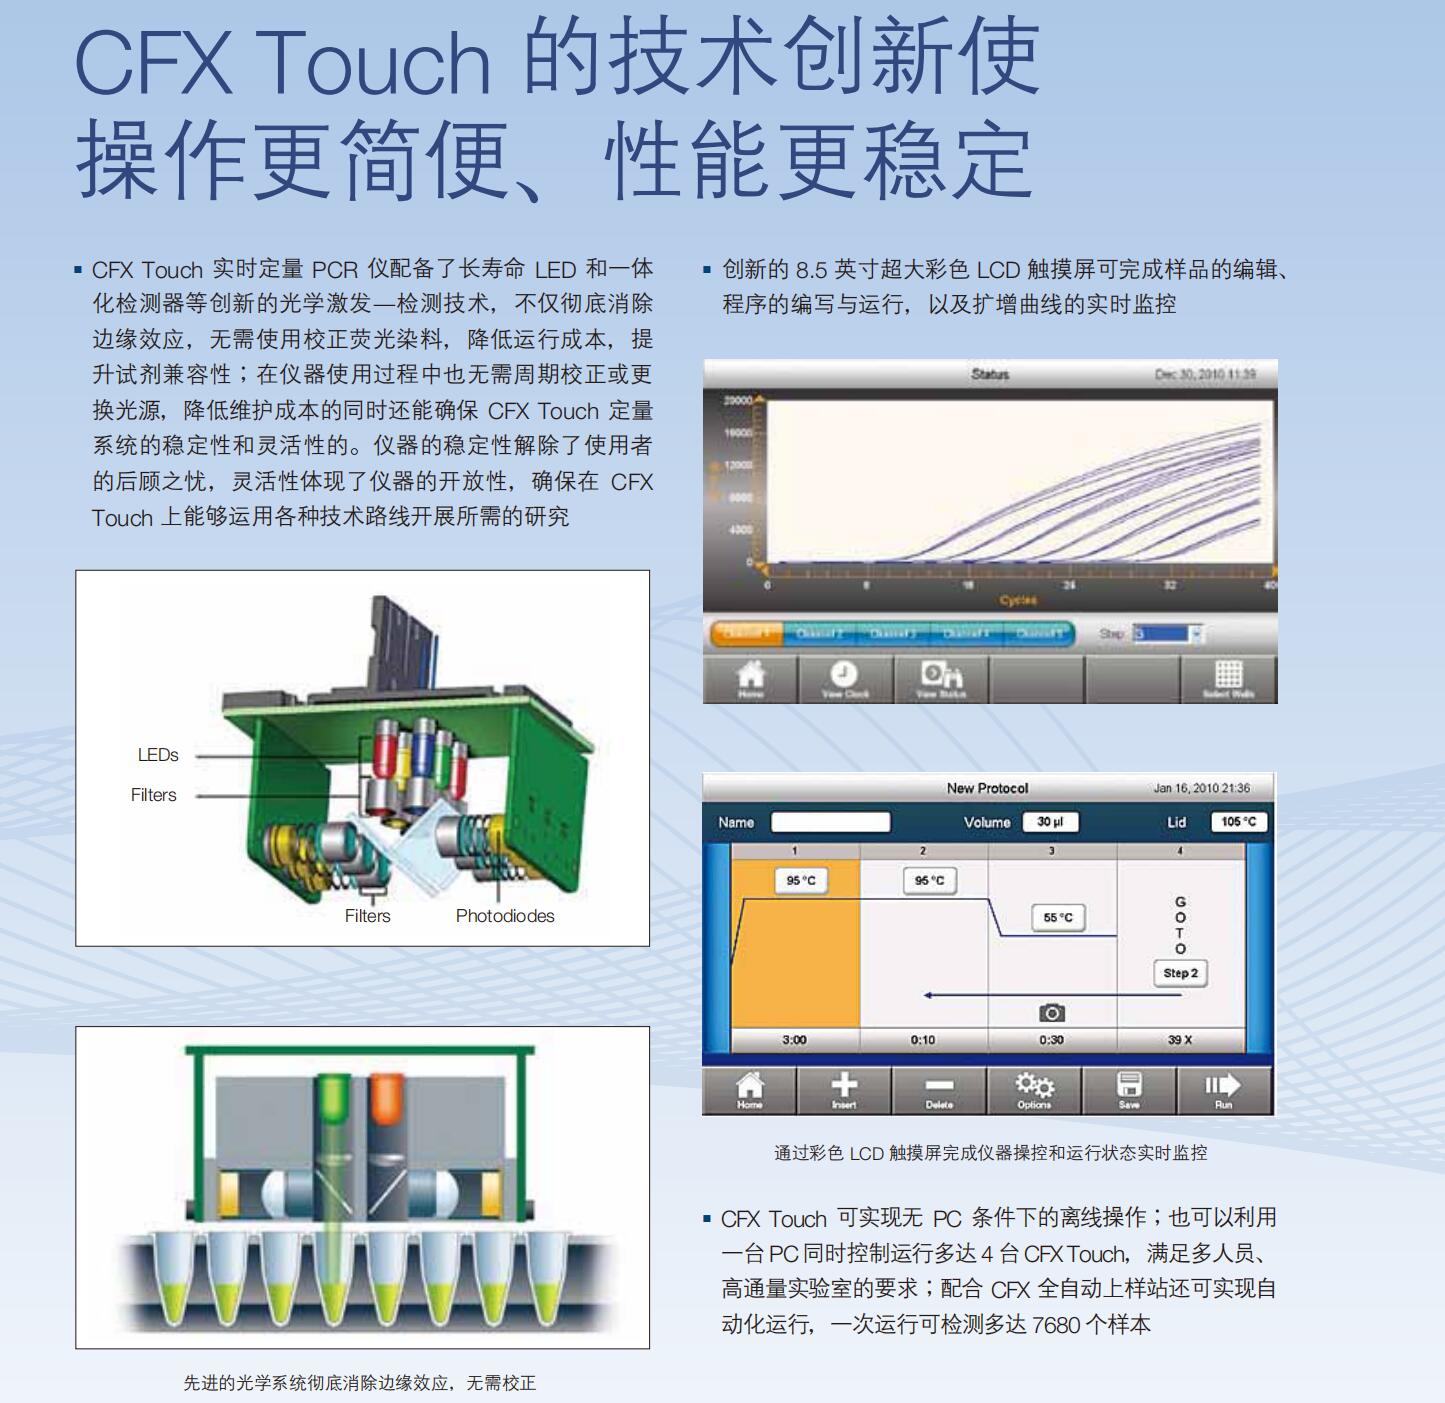 冠状病毒检测伯乐CFX96 touch荧光定量PCR仪-伯乐bio-rad仪器核心区